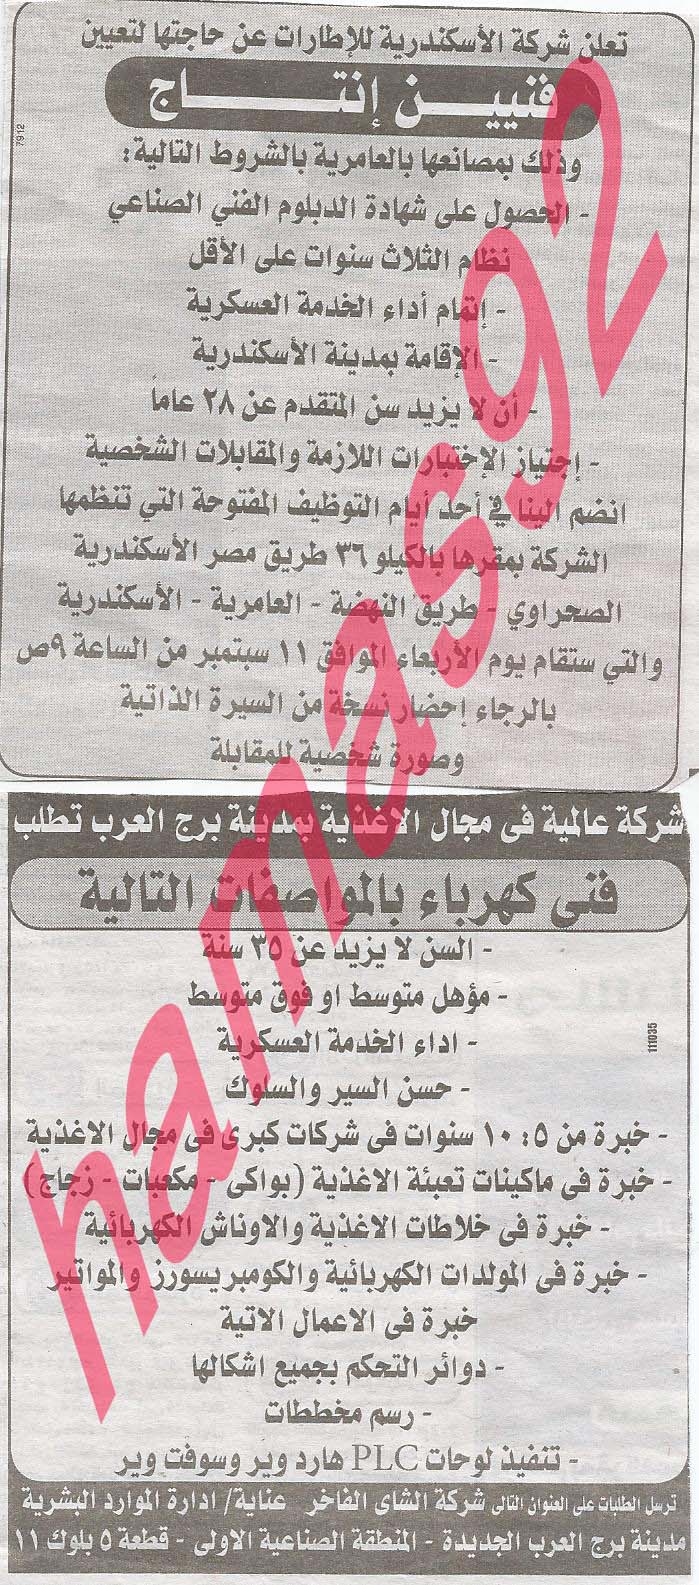 وظائف خالية فى جريدة الوسيط الاسكندرية الجمعة 06-09-2013 %D9%88+%D8%B3+%D8%B3+14